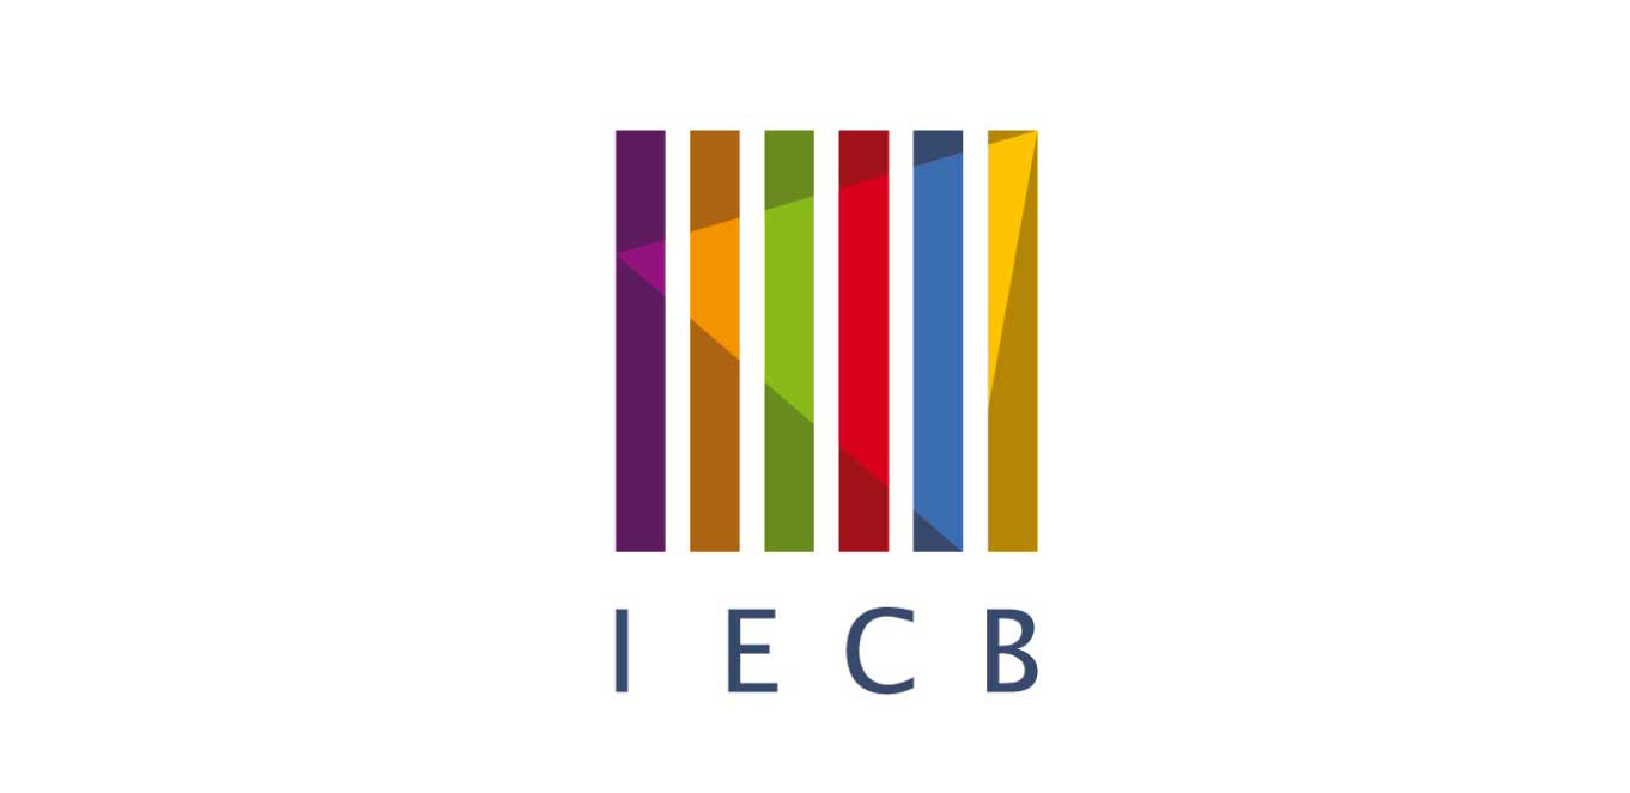 Institut Européen de Chimie et Biologie (IECB)